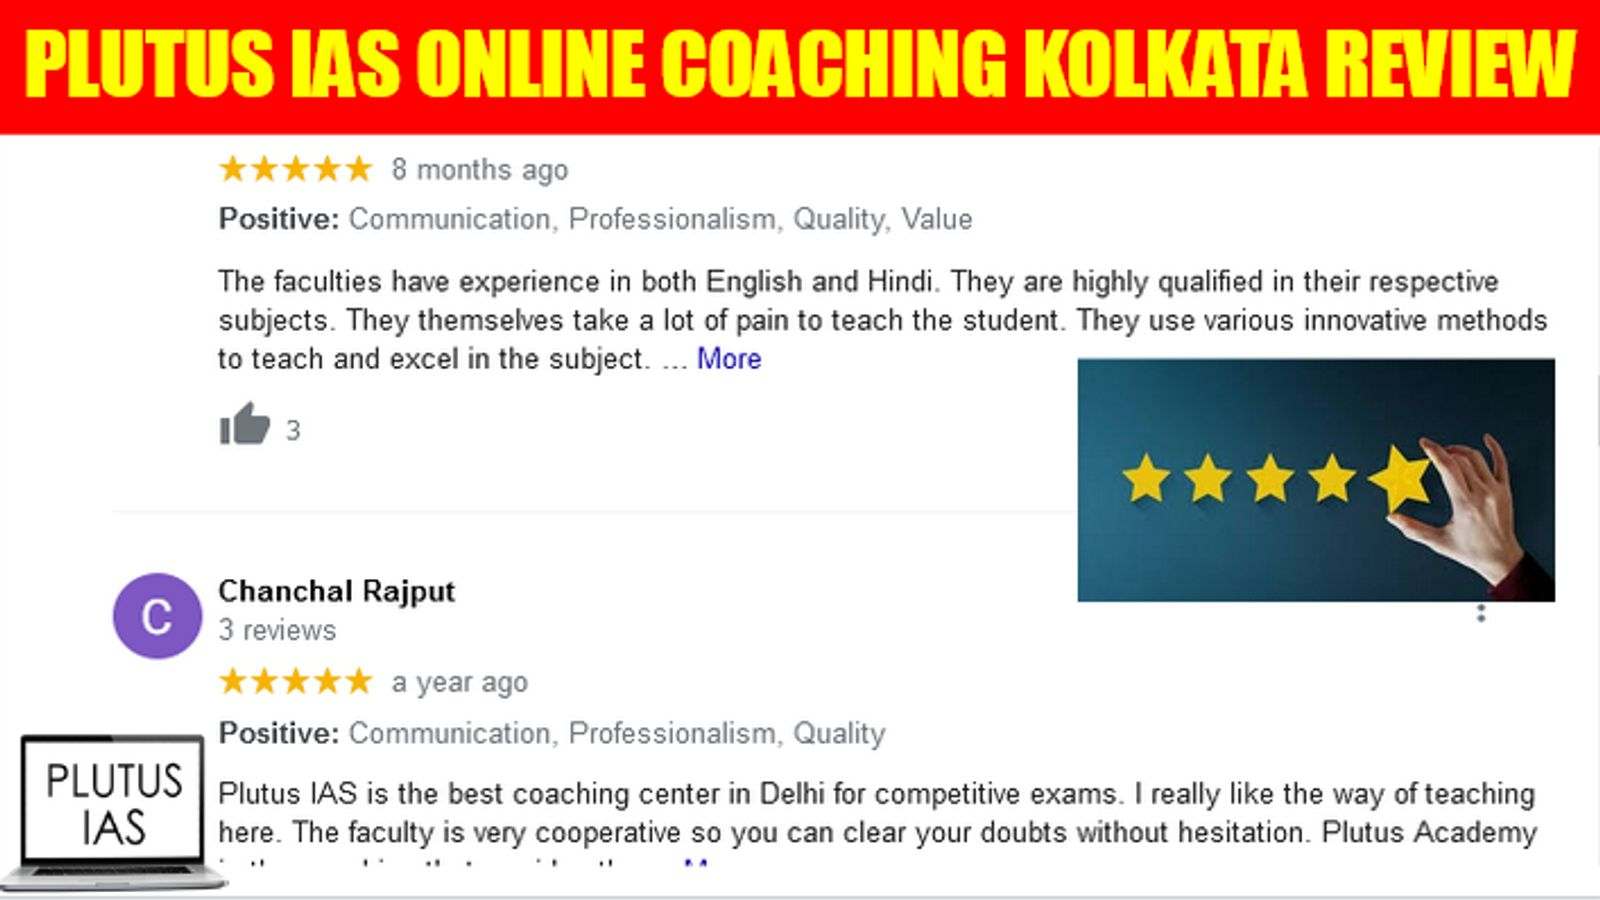 Plutus IAS Online Coaching Kolkata Review